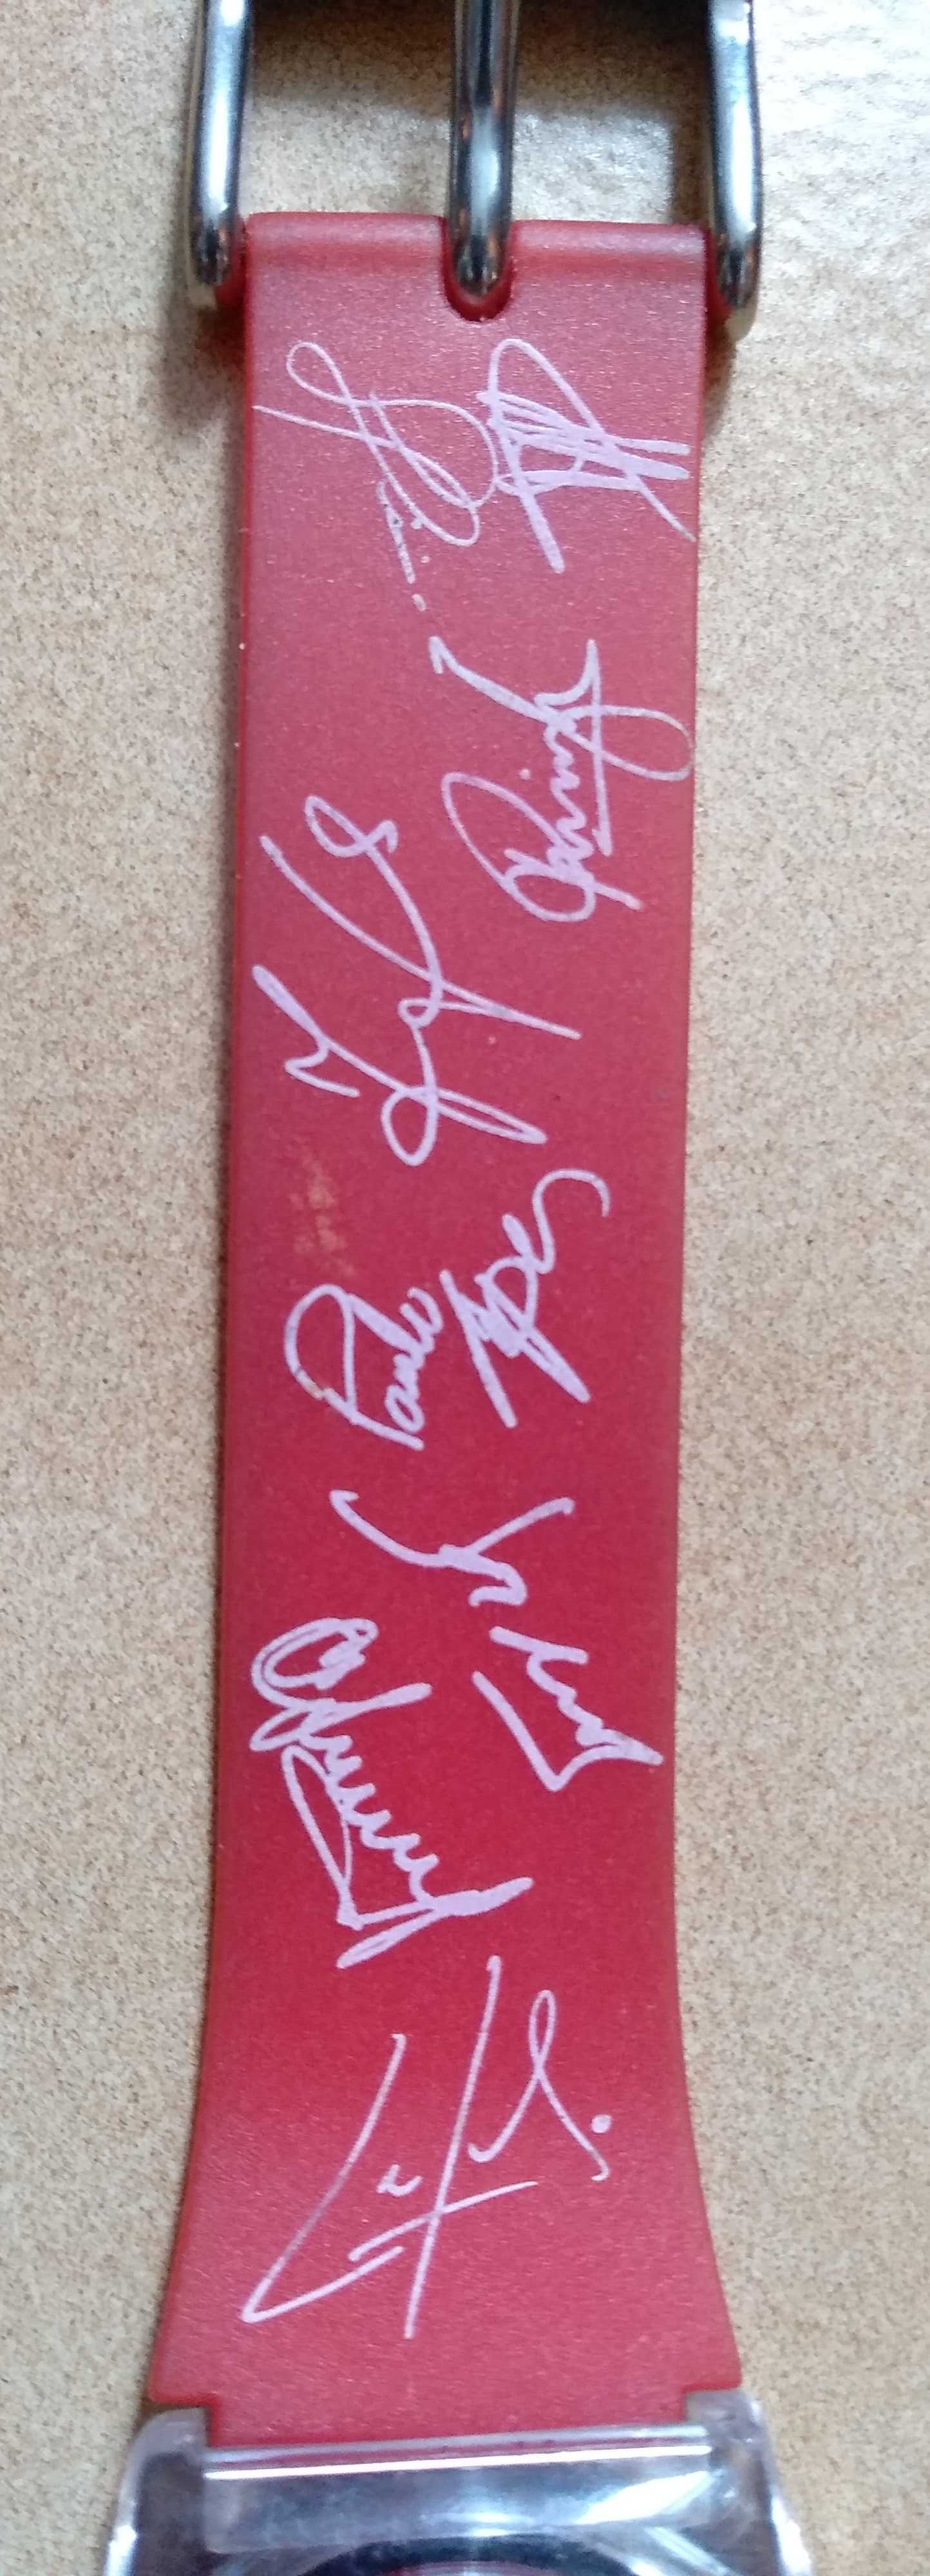 Relógio do Benfica com os autógrafos da equipa